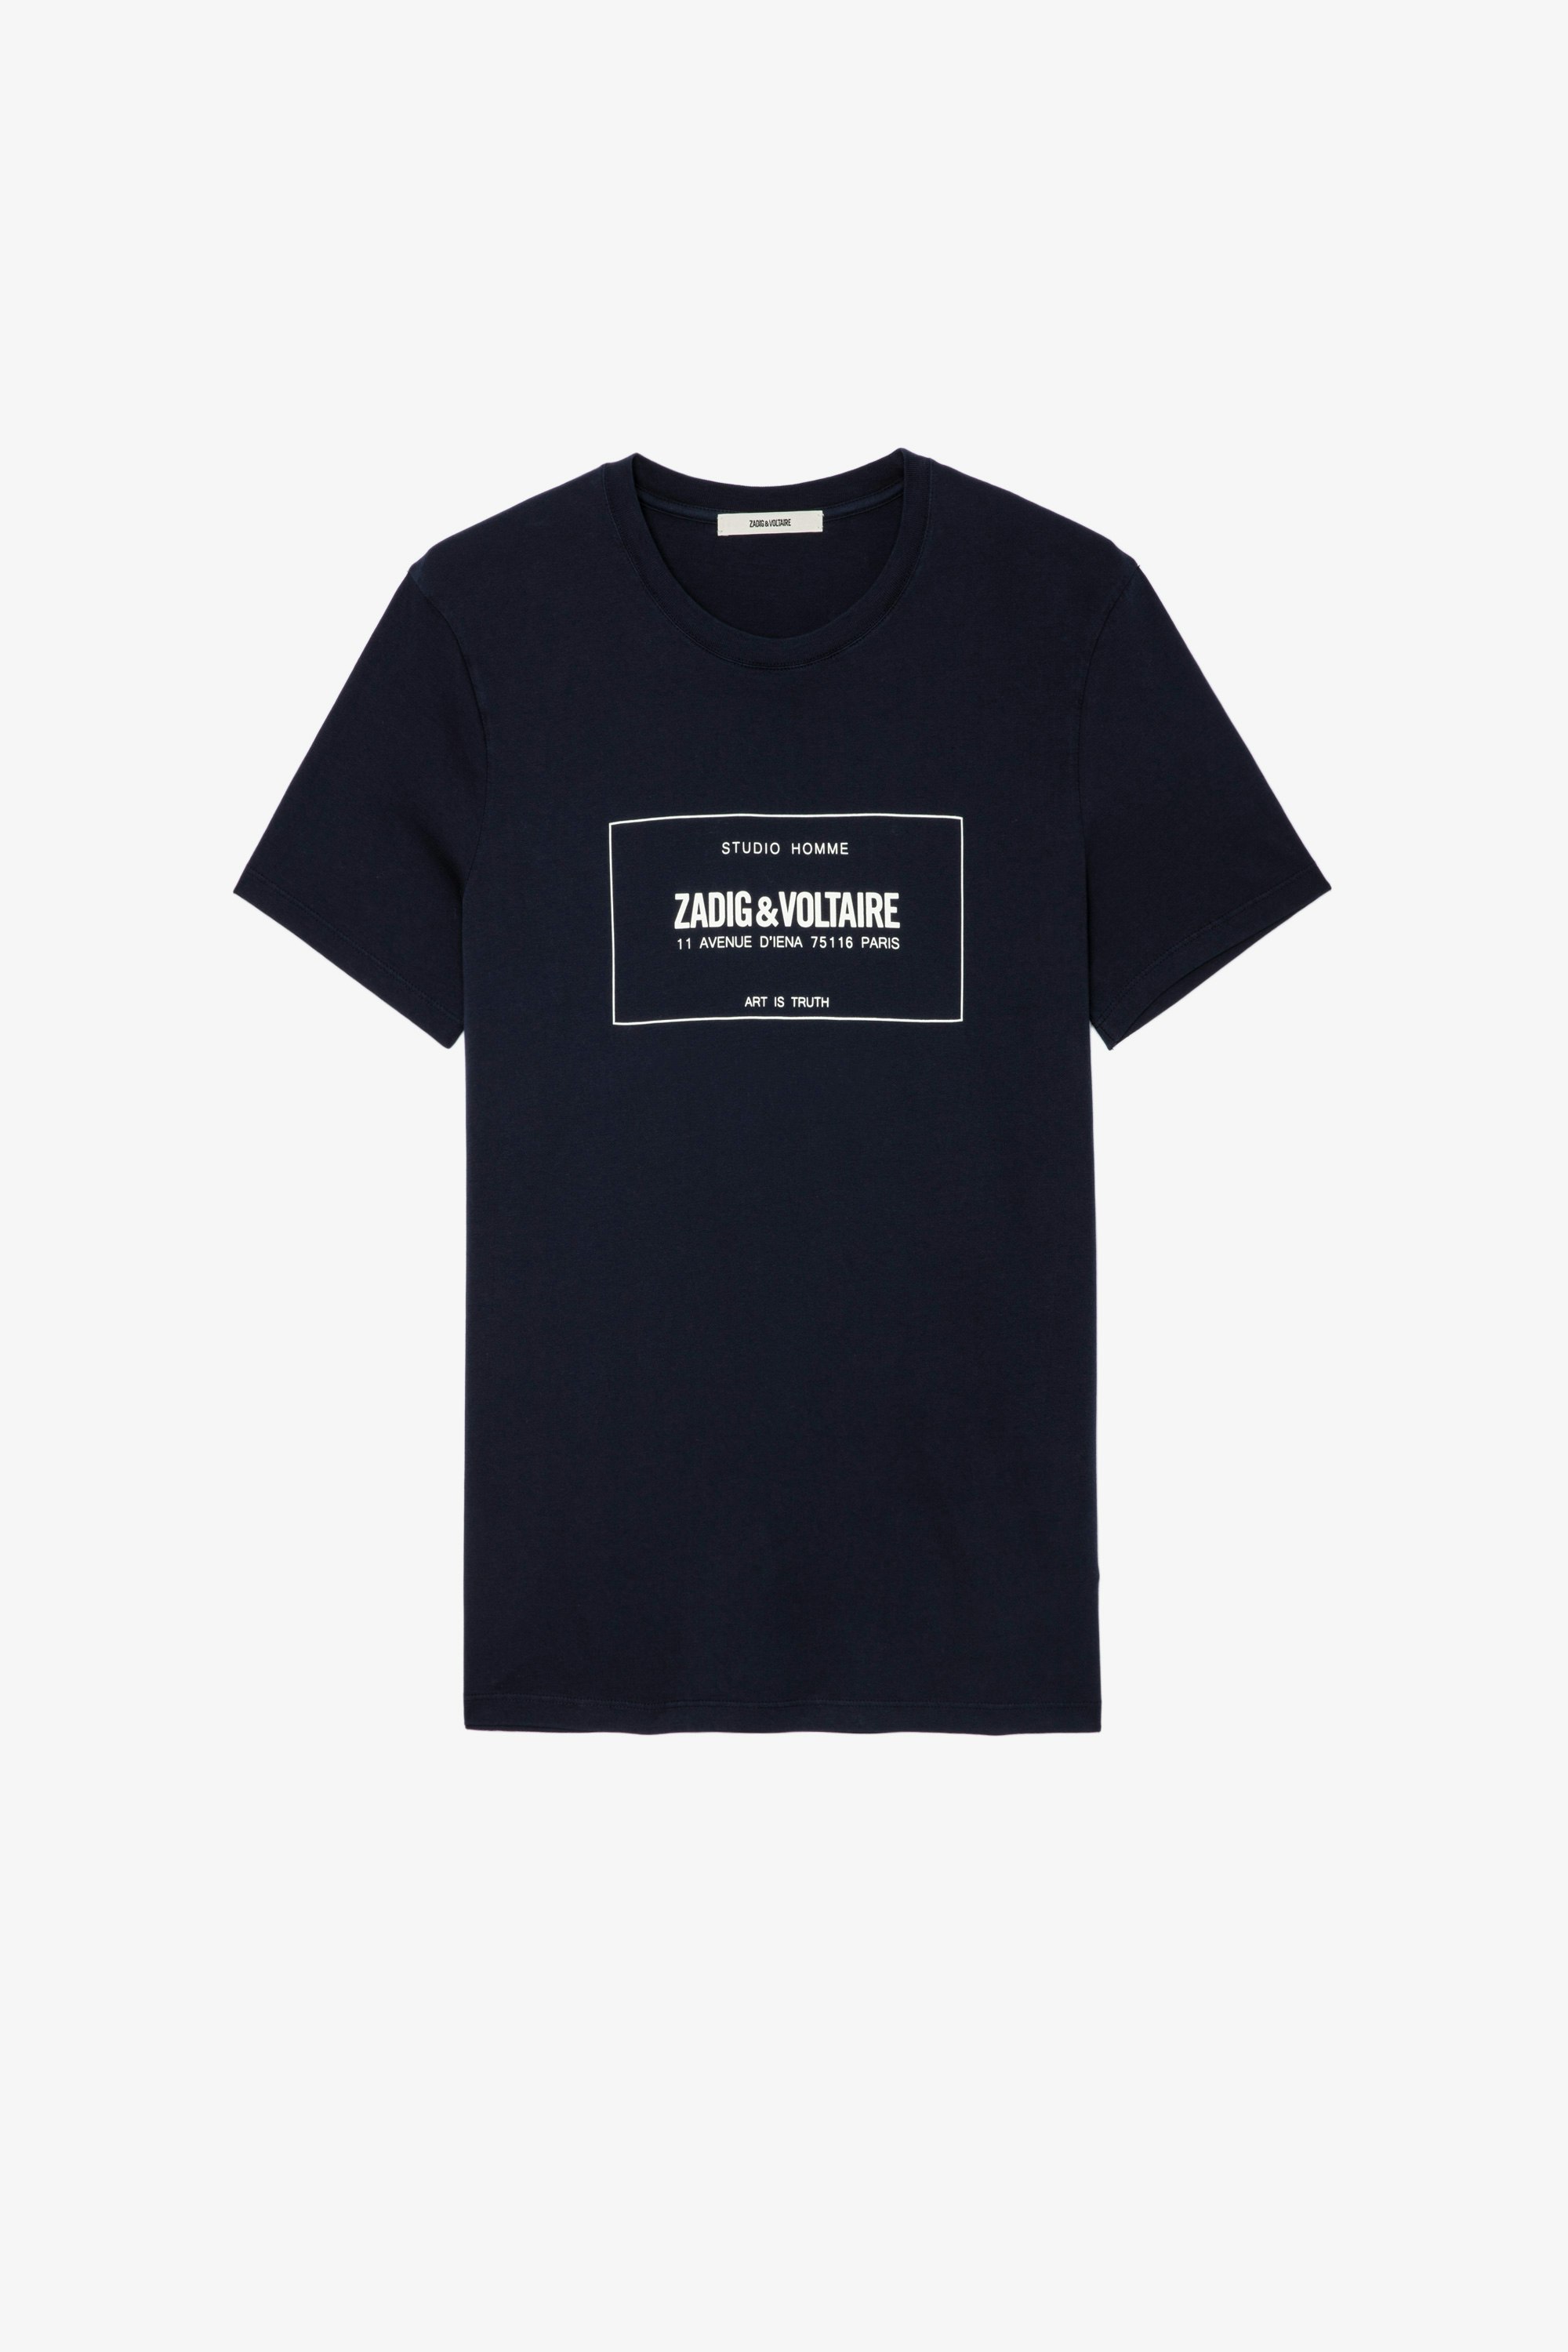 Camiseta Ted Blason Camiseta azul marino de algodón para hombre con blasón de la marca